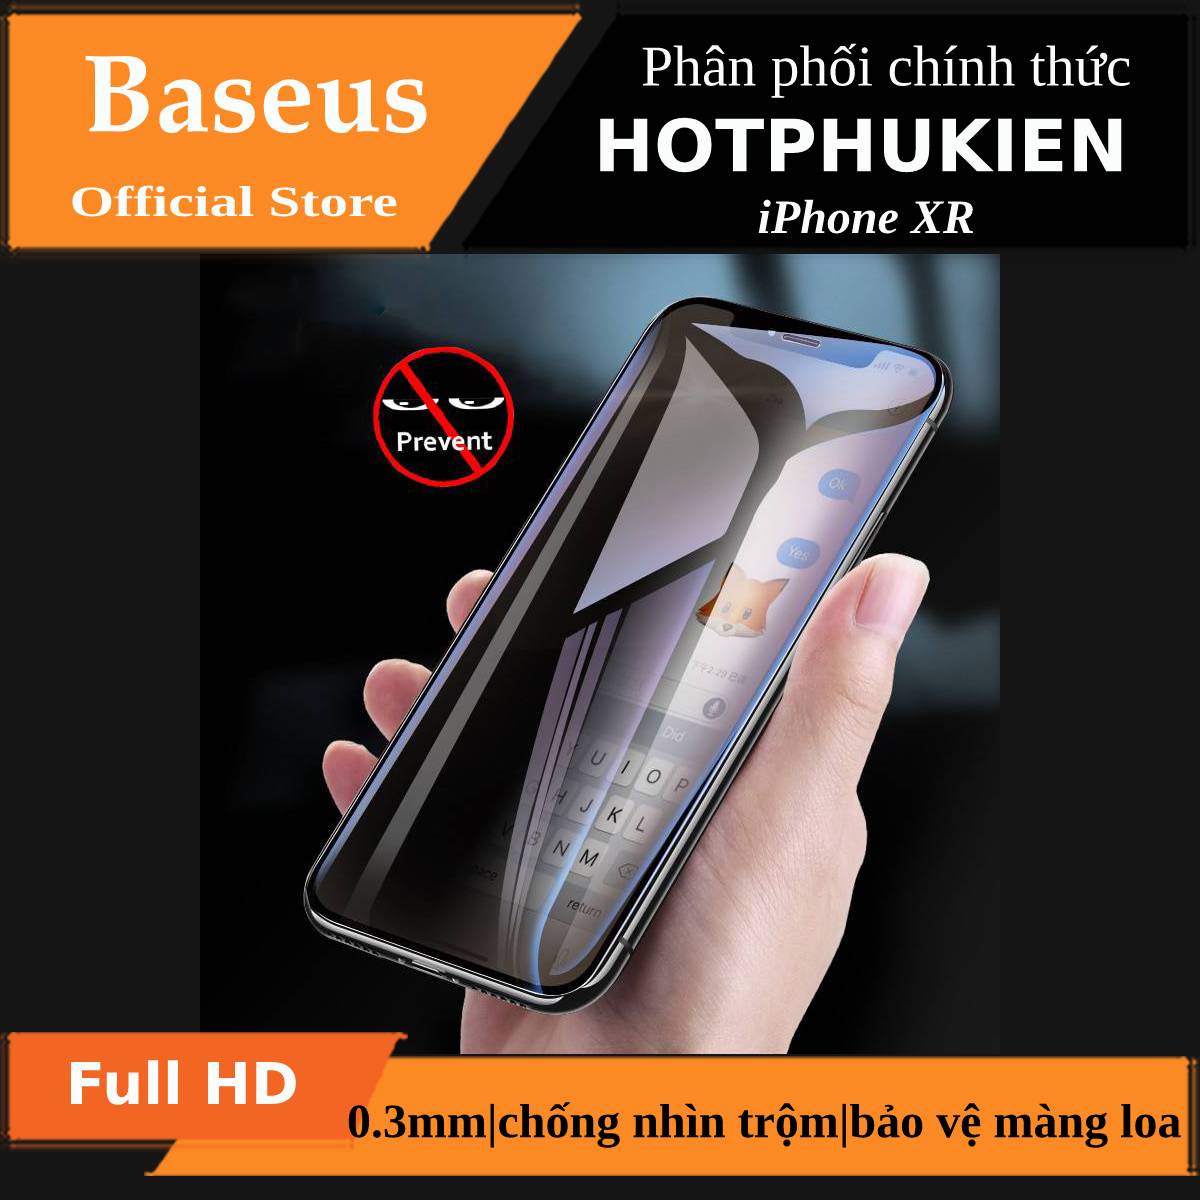 Miếng dán kính cường lực chống nhìn trộm cho iPhone XR hiệu Baseus